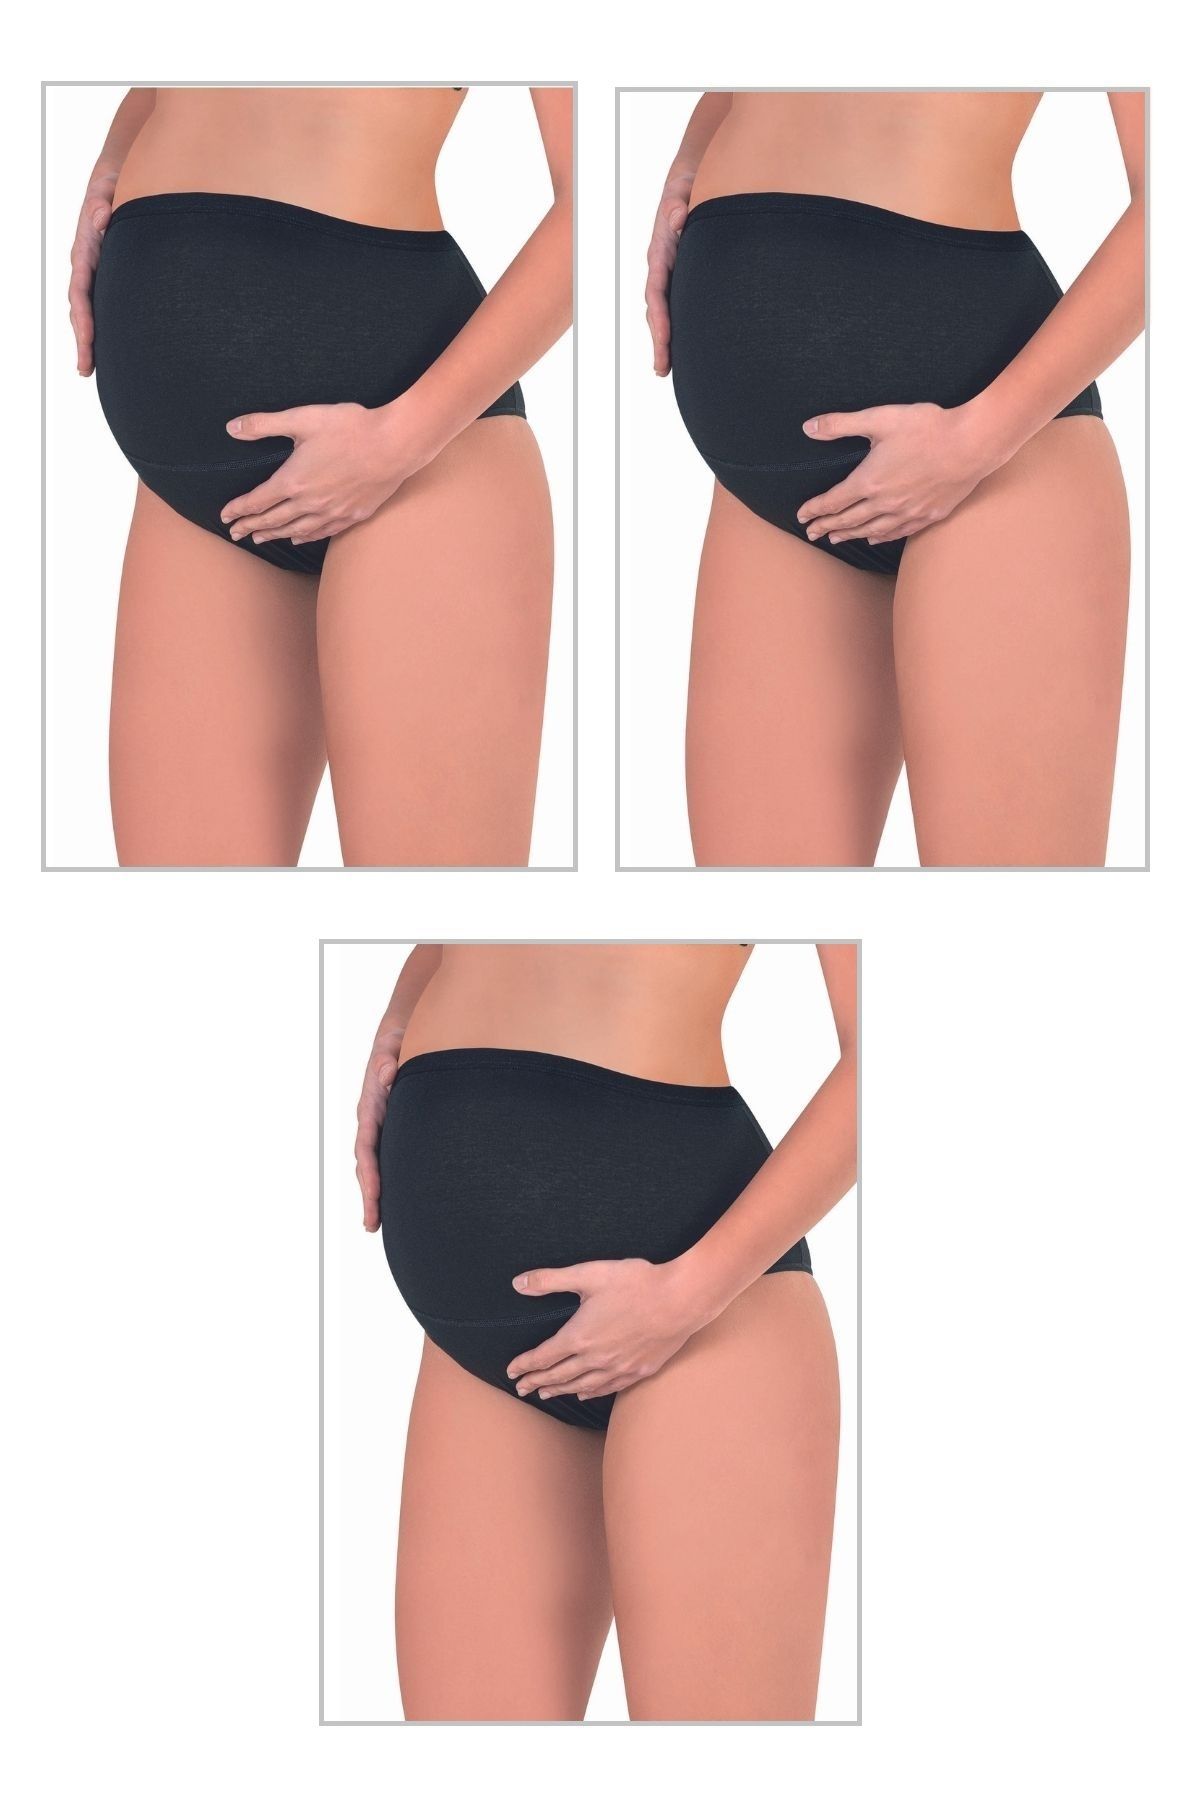 ÖZKAN underwear Özkan 23582 3'lü Paket Kadın Siyah Renk Pamuklu Likralı Süprem Hamile Lohusa Yüksek Bel Bato Külot